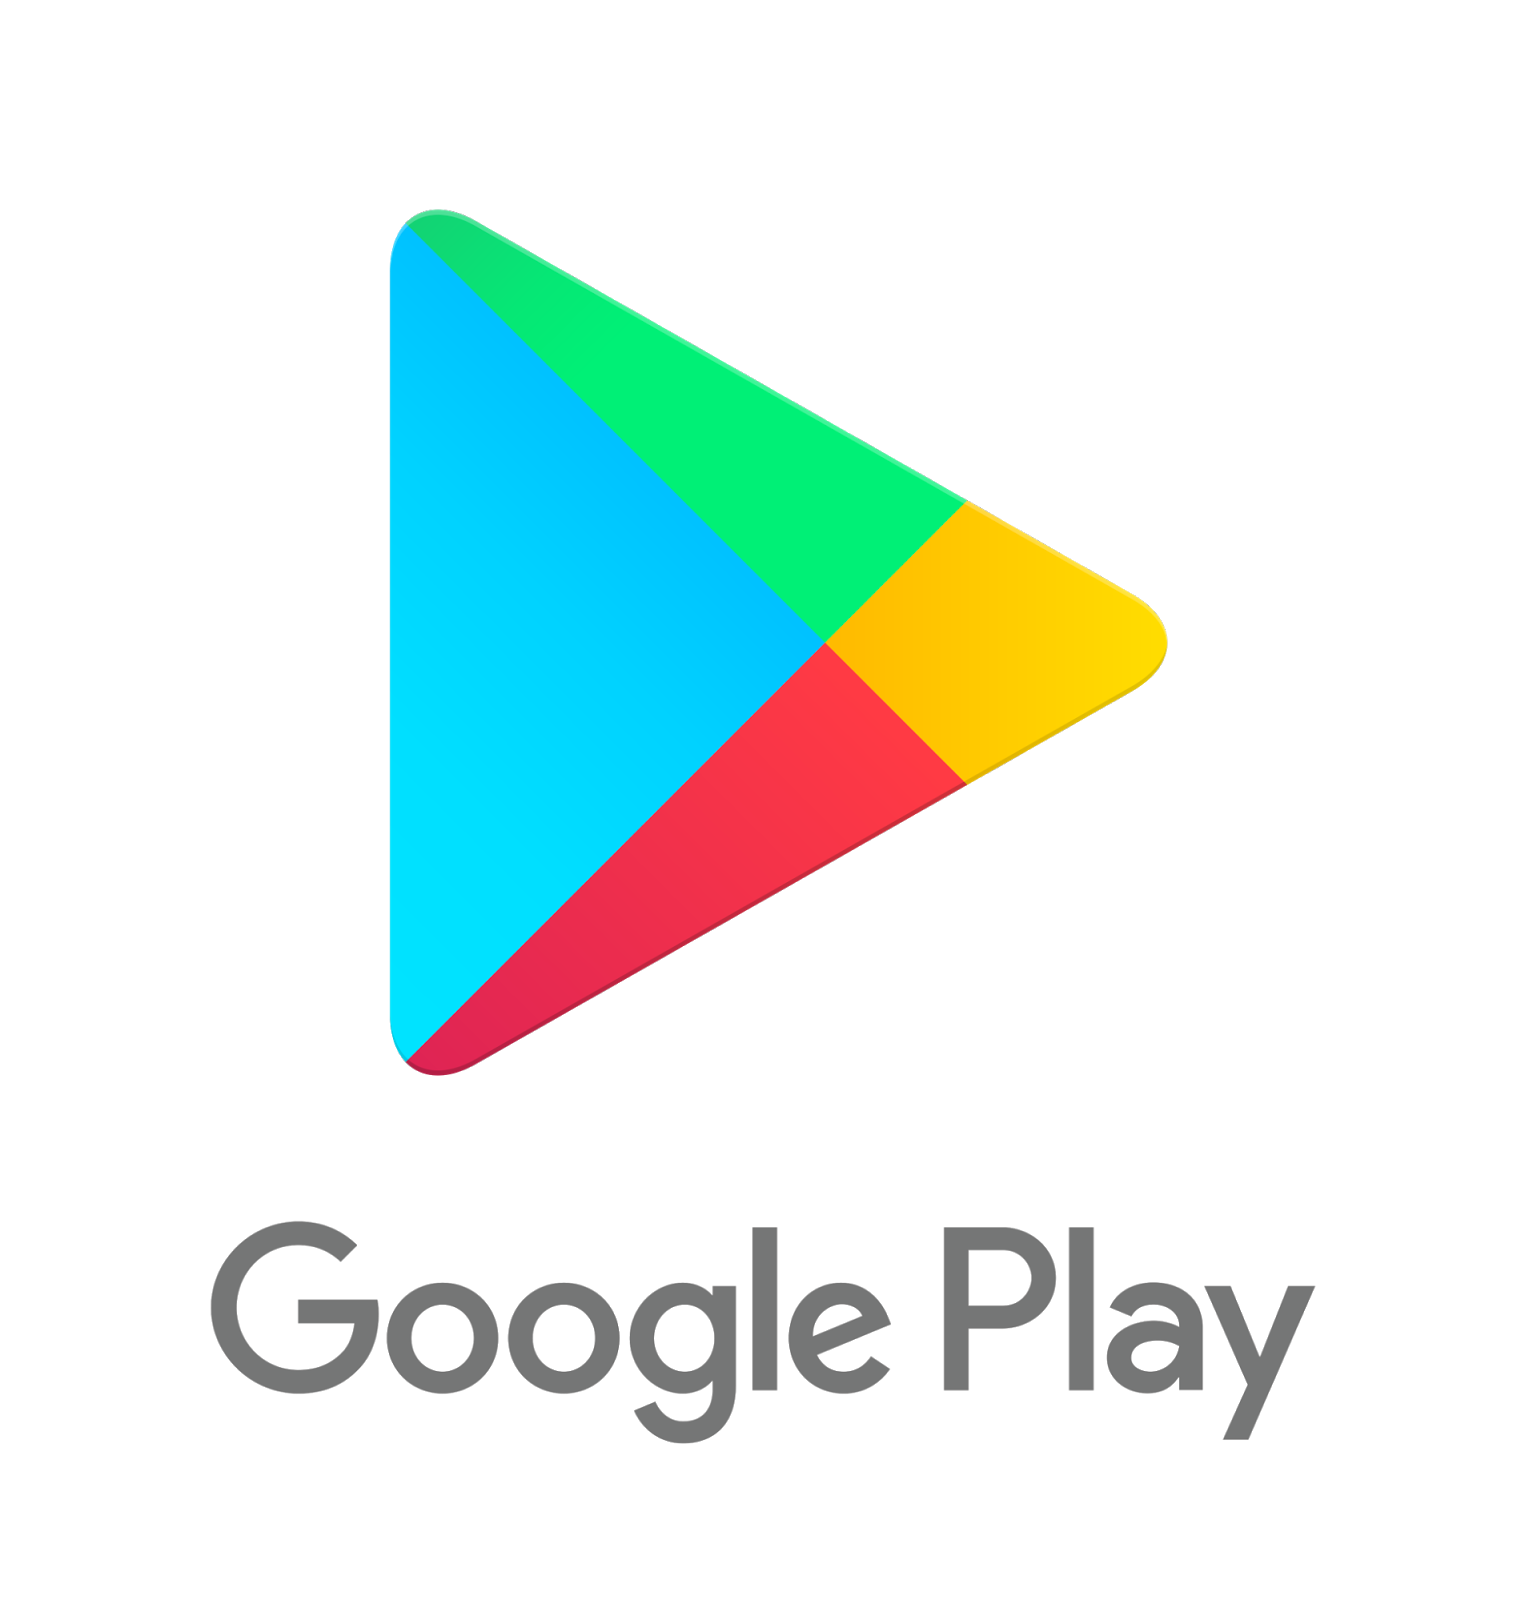 PlayStore Pró v13.3.4 APK – Baixe jogos e aplicativos grátis da google play